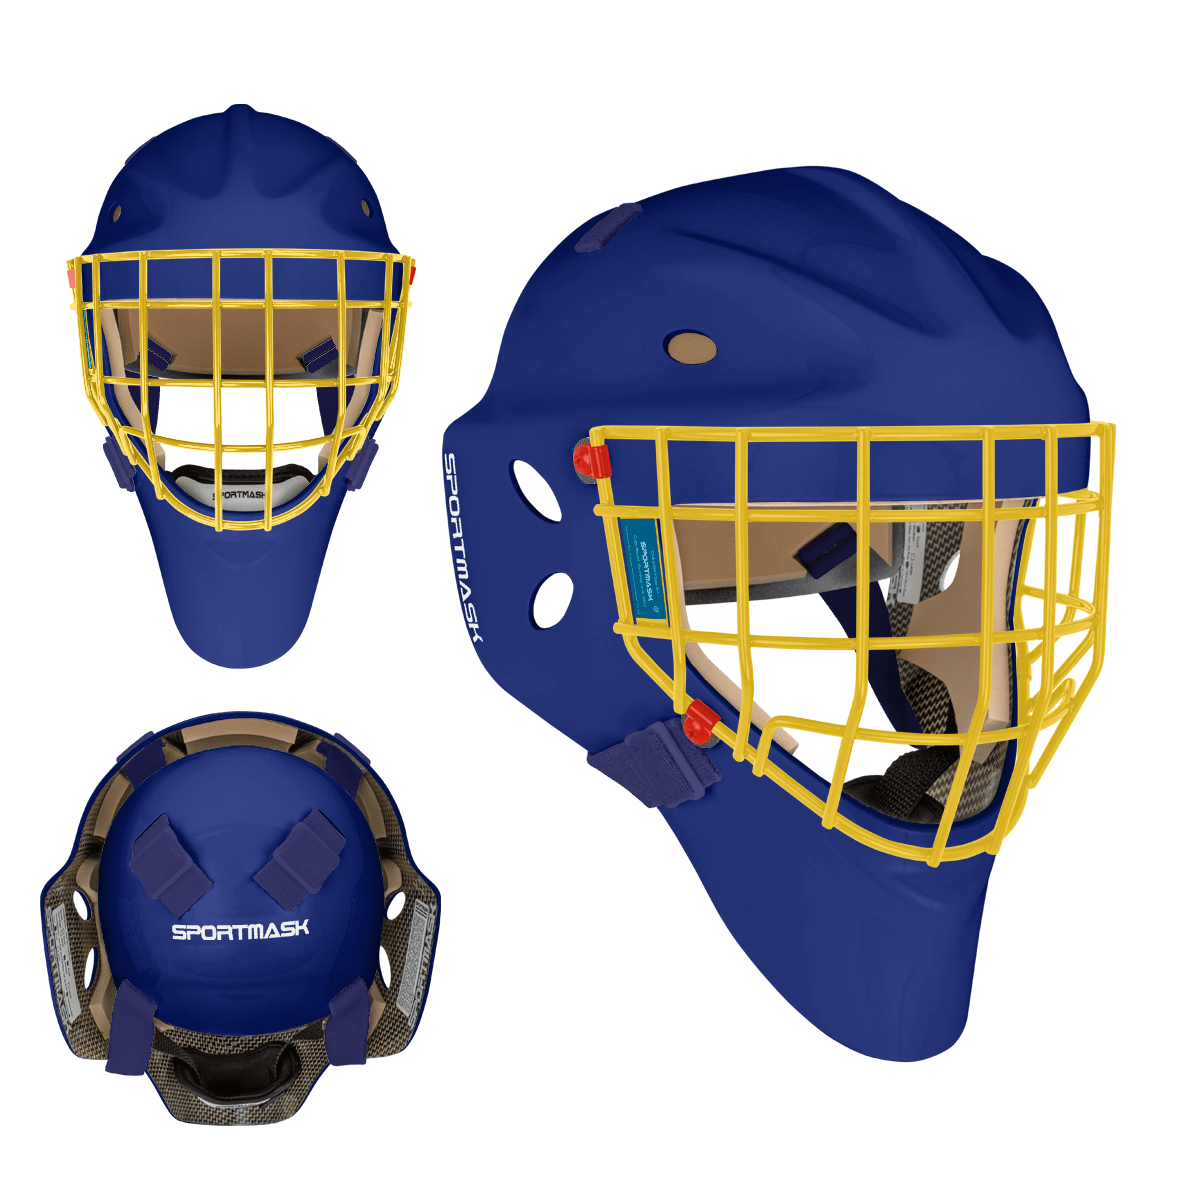 Sportmask T3 Goalie Mask - Custom Design - Senior St. Louis Inspiration